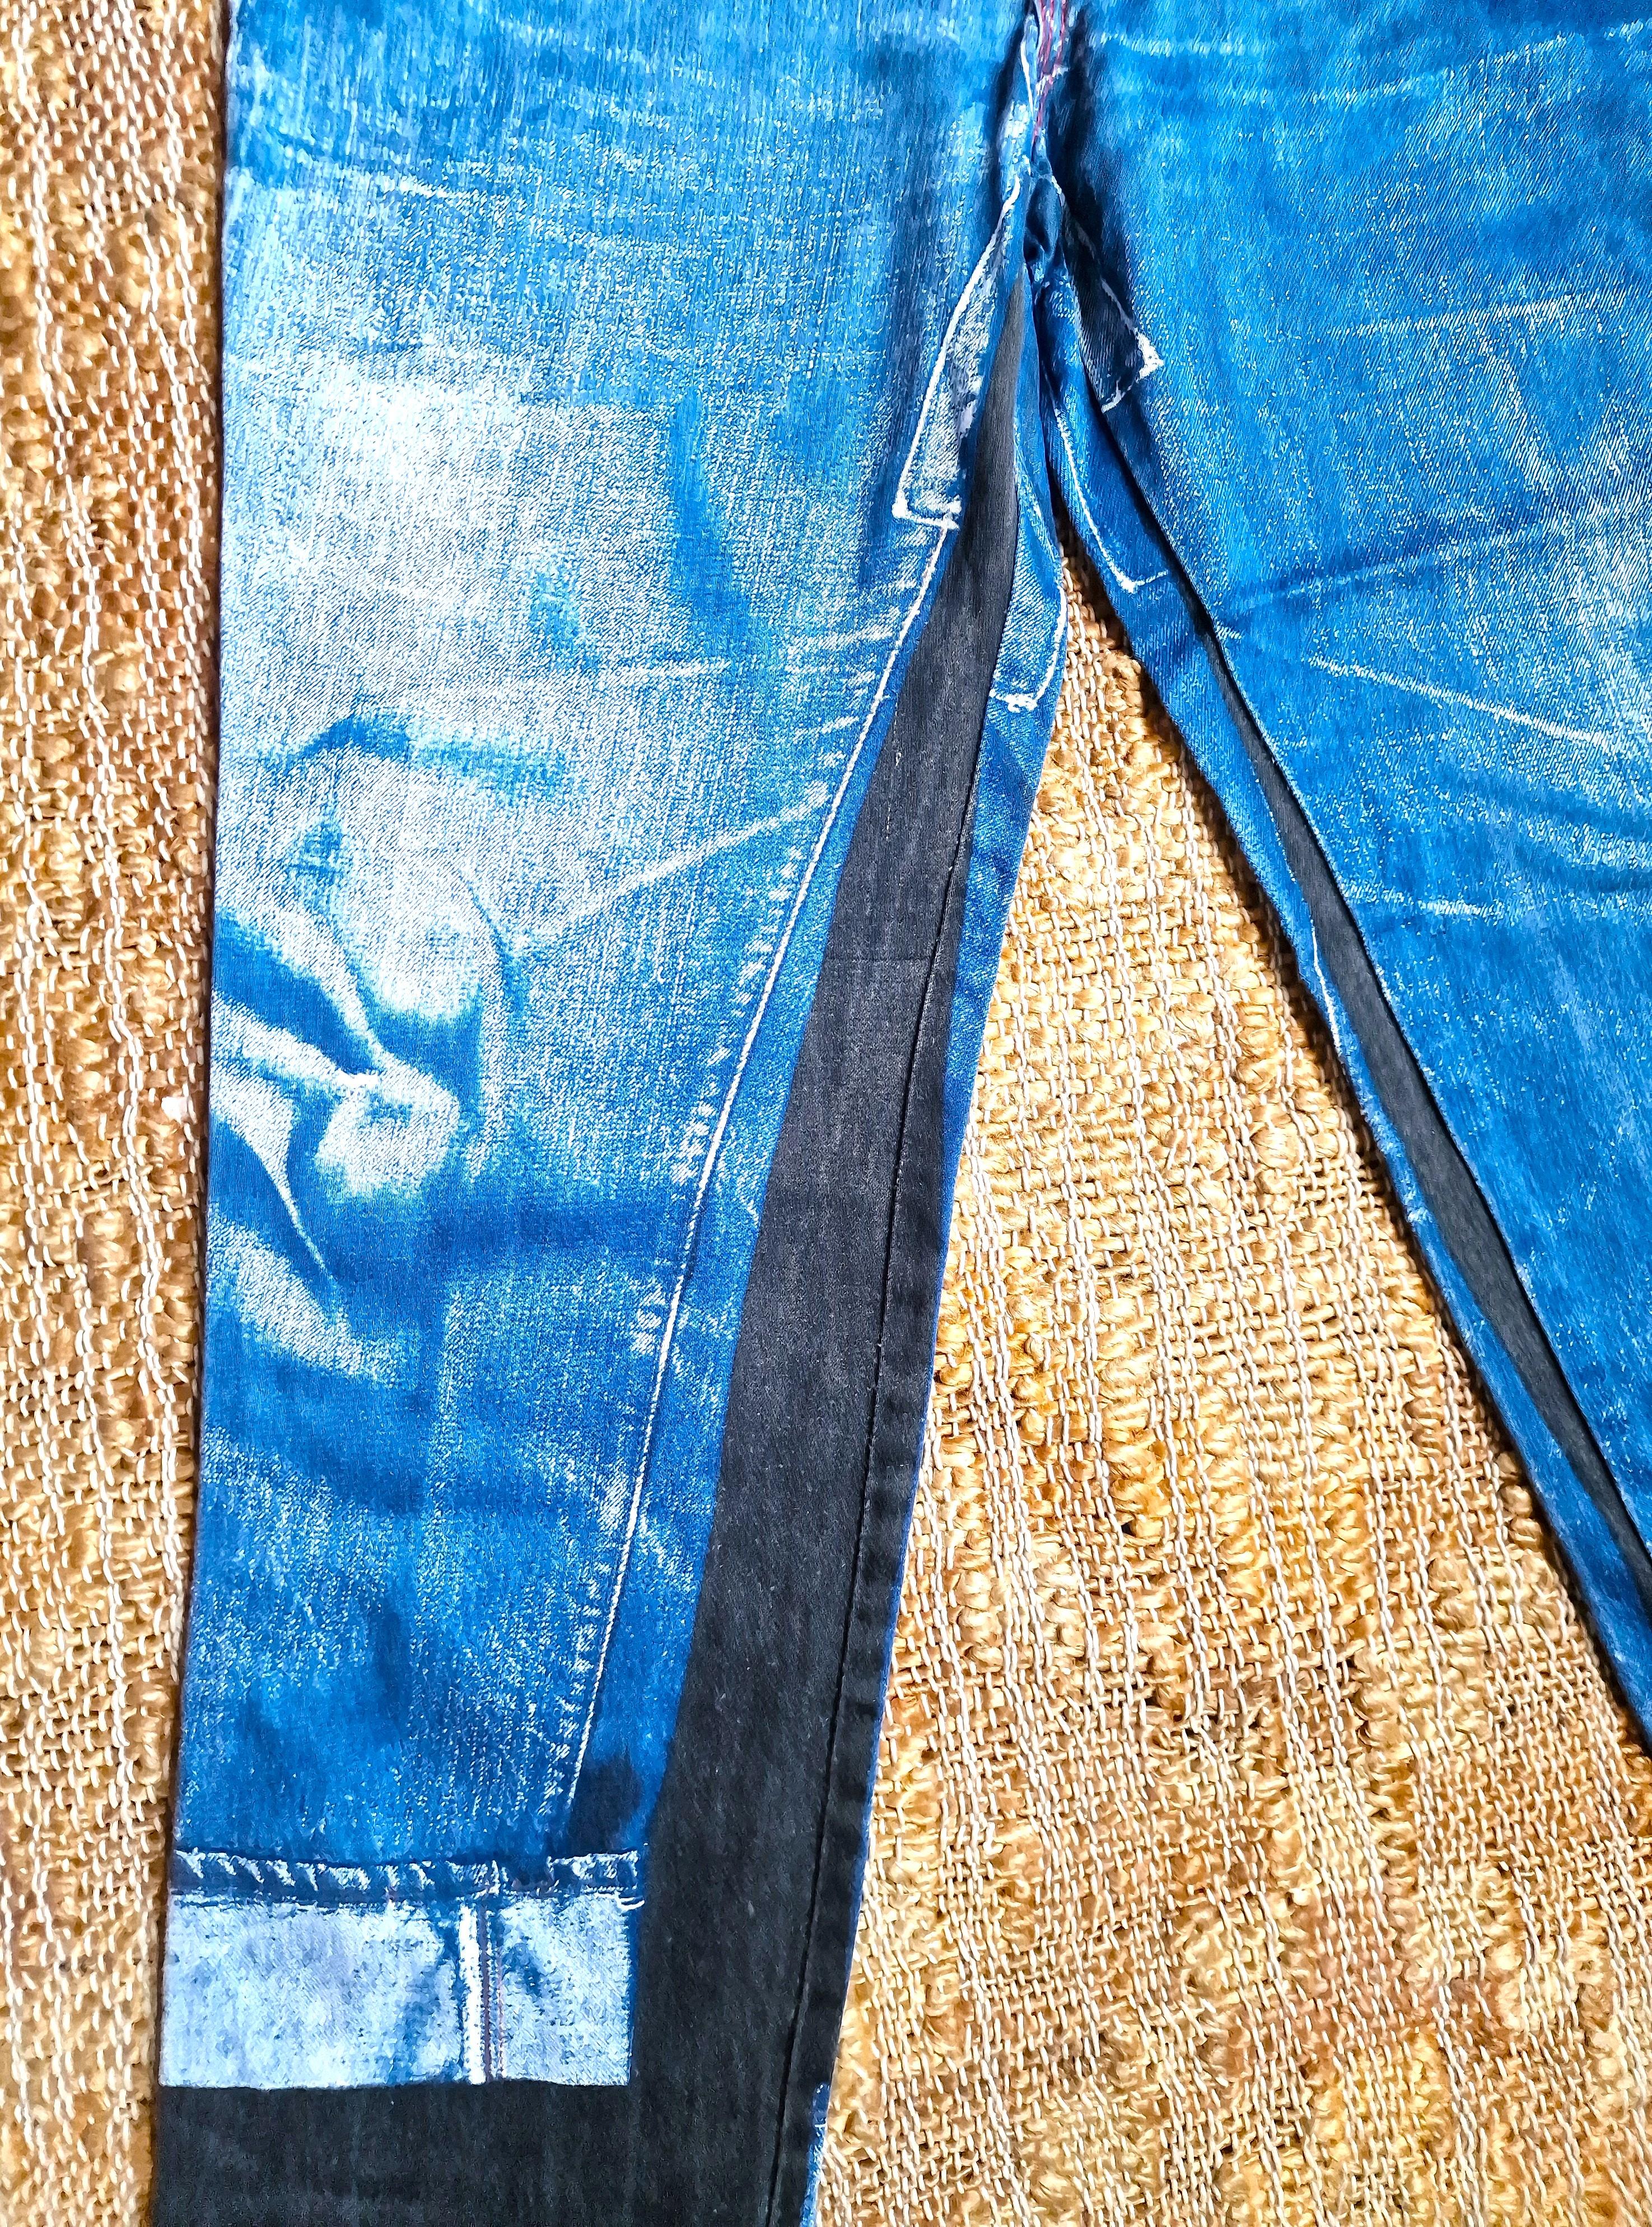 Jean Paul Gaultier Trompe L'Oeil Denim Optical Illusion Vintage Jeans Pants For Sale 1